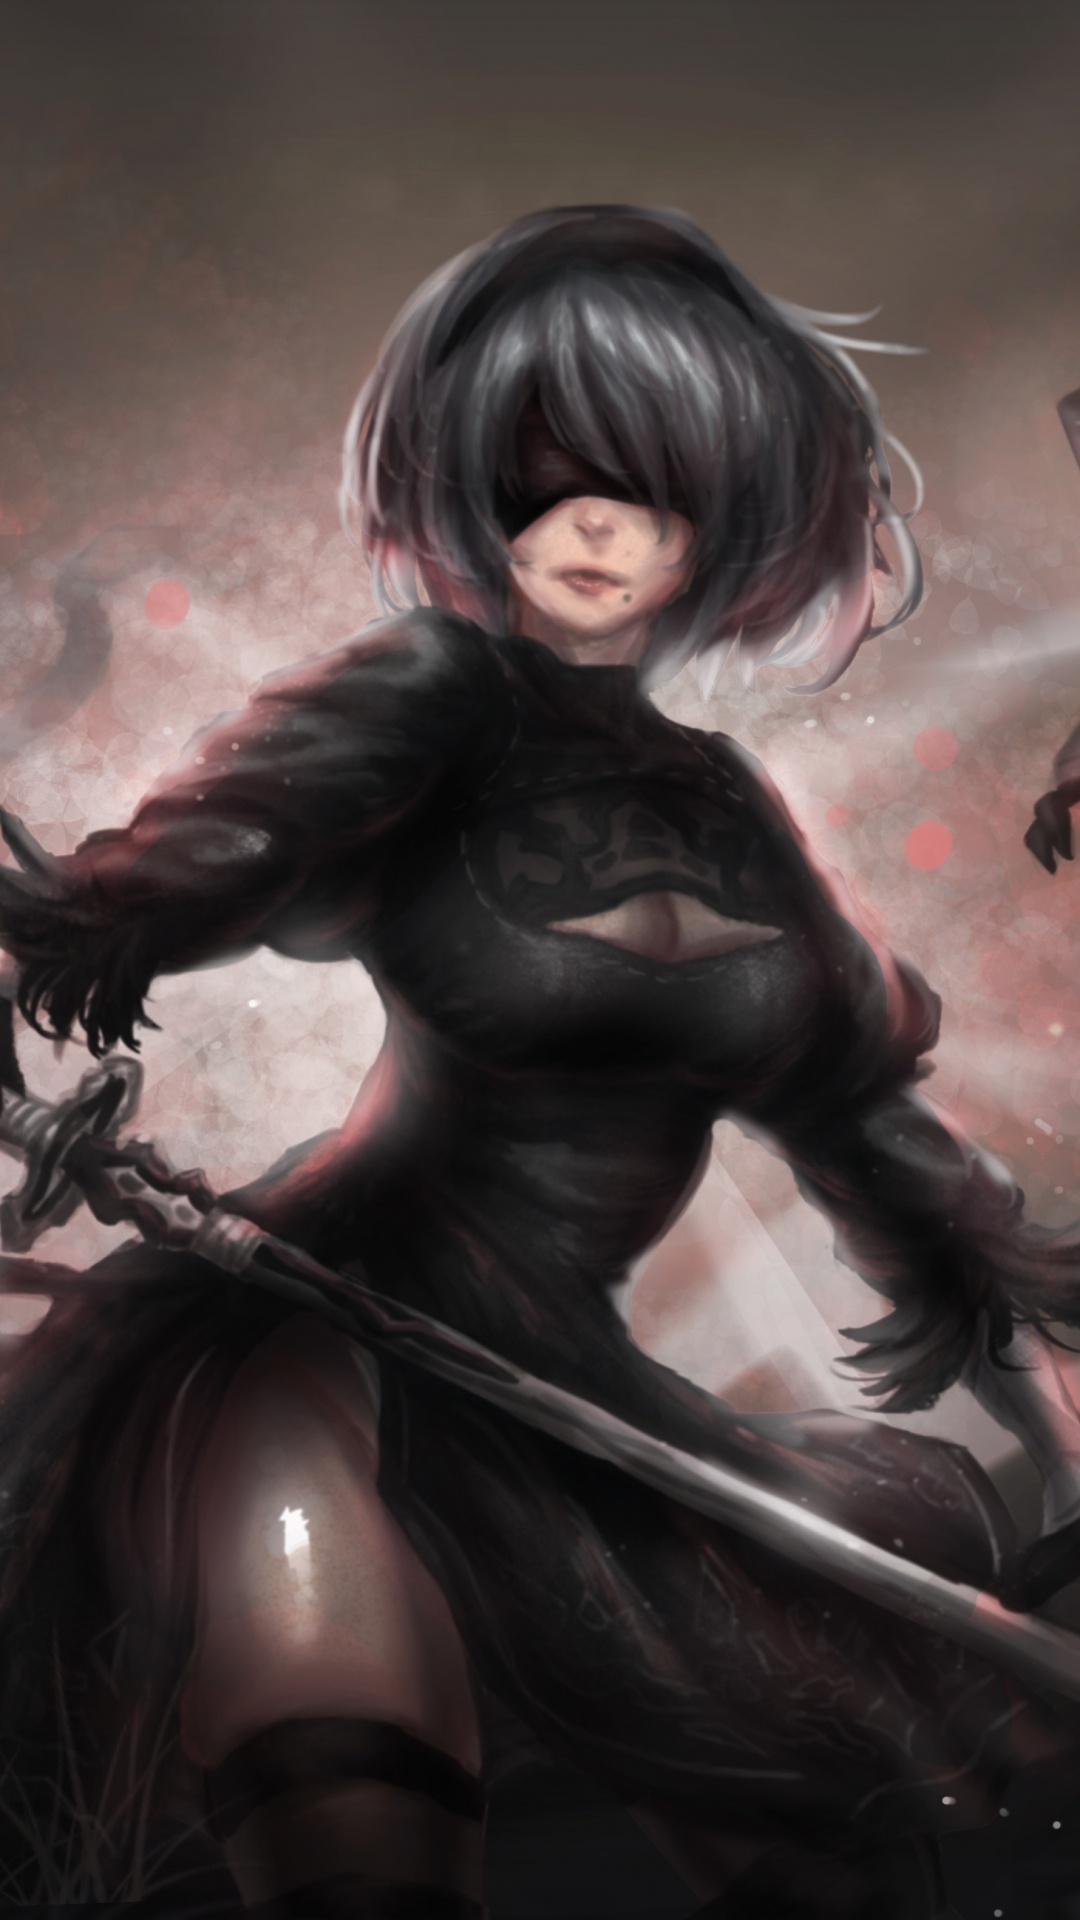 Mujer en Camisa de Manga Larga Negra Con Arma Negra. Wallpaper in 1080x1920 Resolution